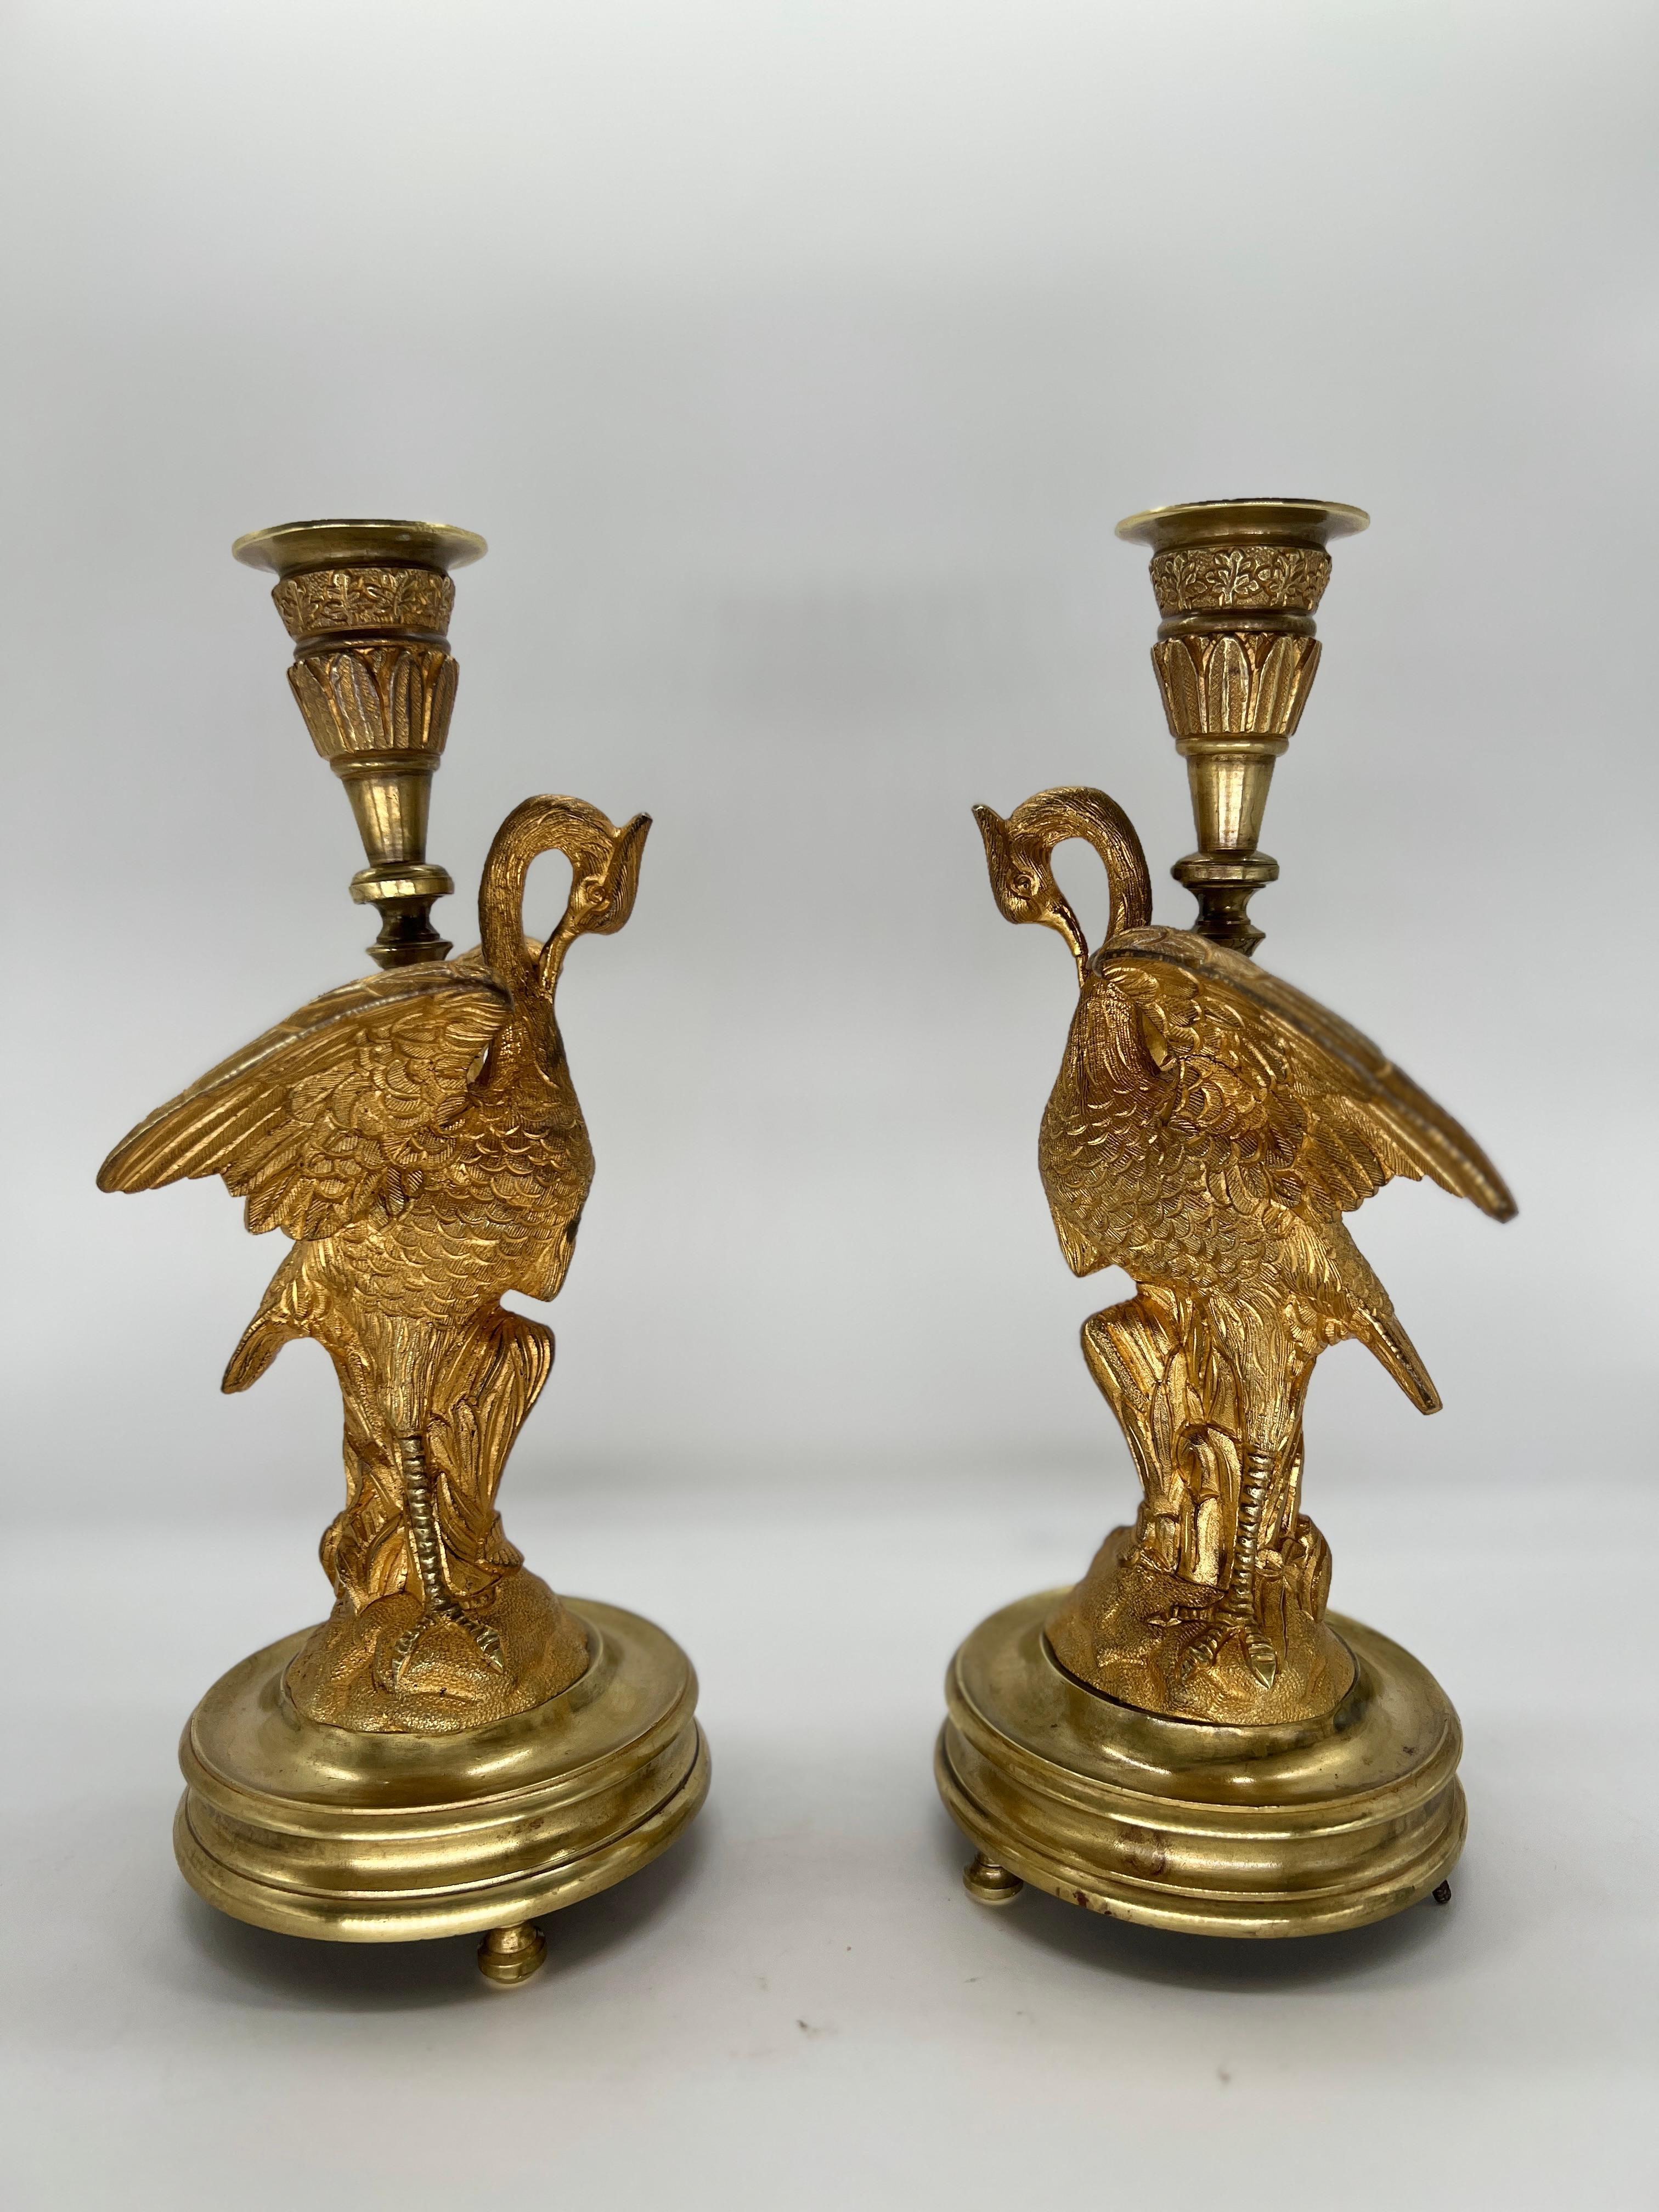 Frankreich, um 1815. 

Dieses exquisite Paar französischer Empire-Leuchter aus vergoldeter Bronze, das um 1815 gefertigt wurde, verkörpert die Opulenz und Grandeur des Empire-Stils. Jeder Kerzenhalter zeigt ein anmutiges Kranichmotiv, das